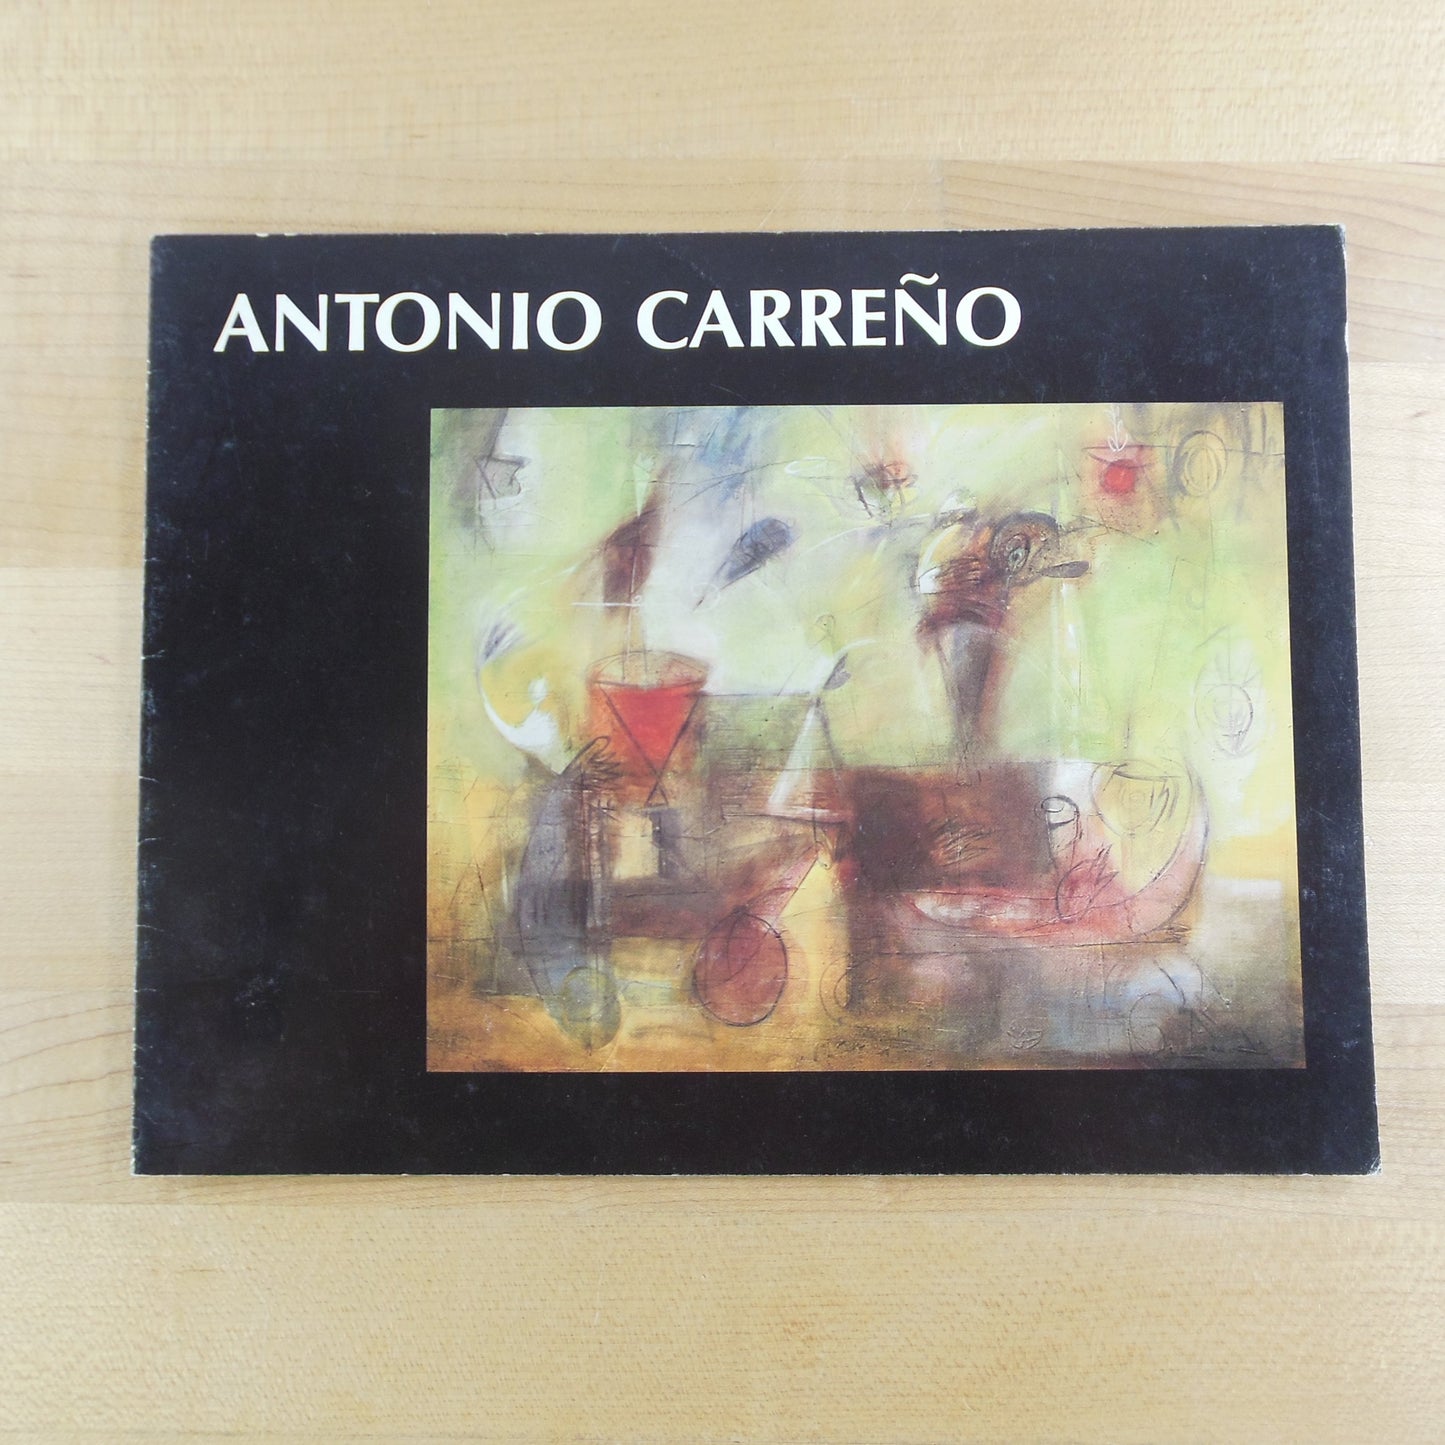 Antonio Carreno Paintings Exhibition Gallery Catalog 1996 Corbino Galleries